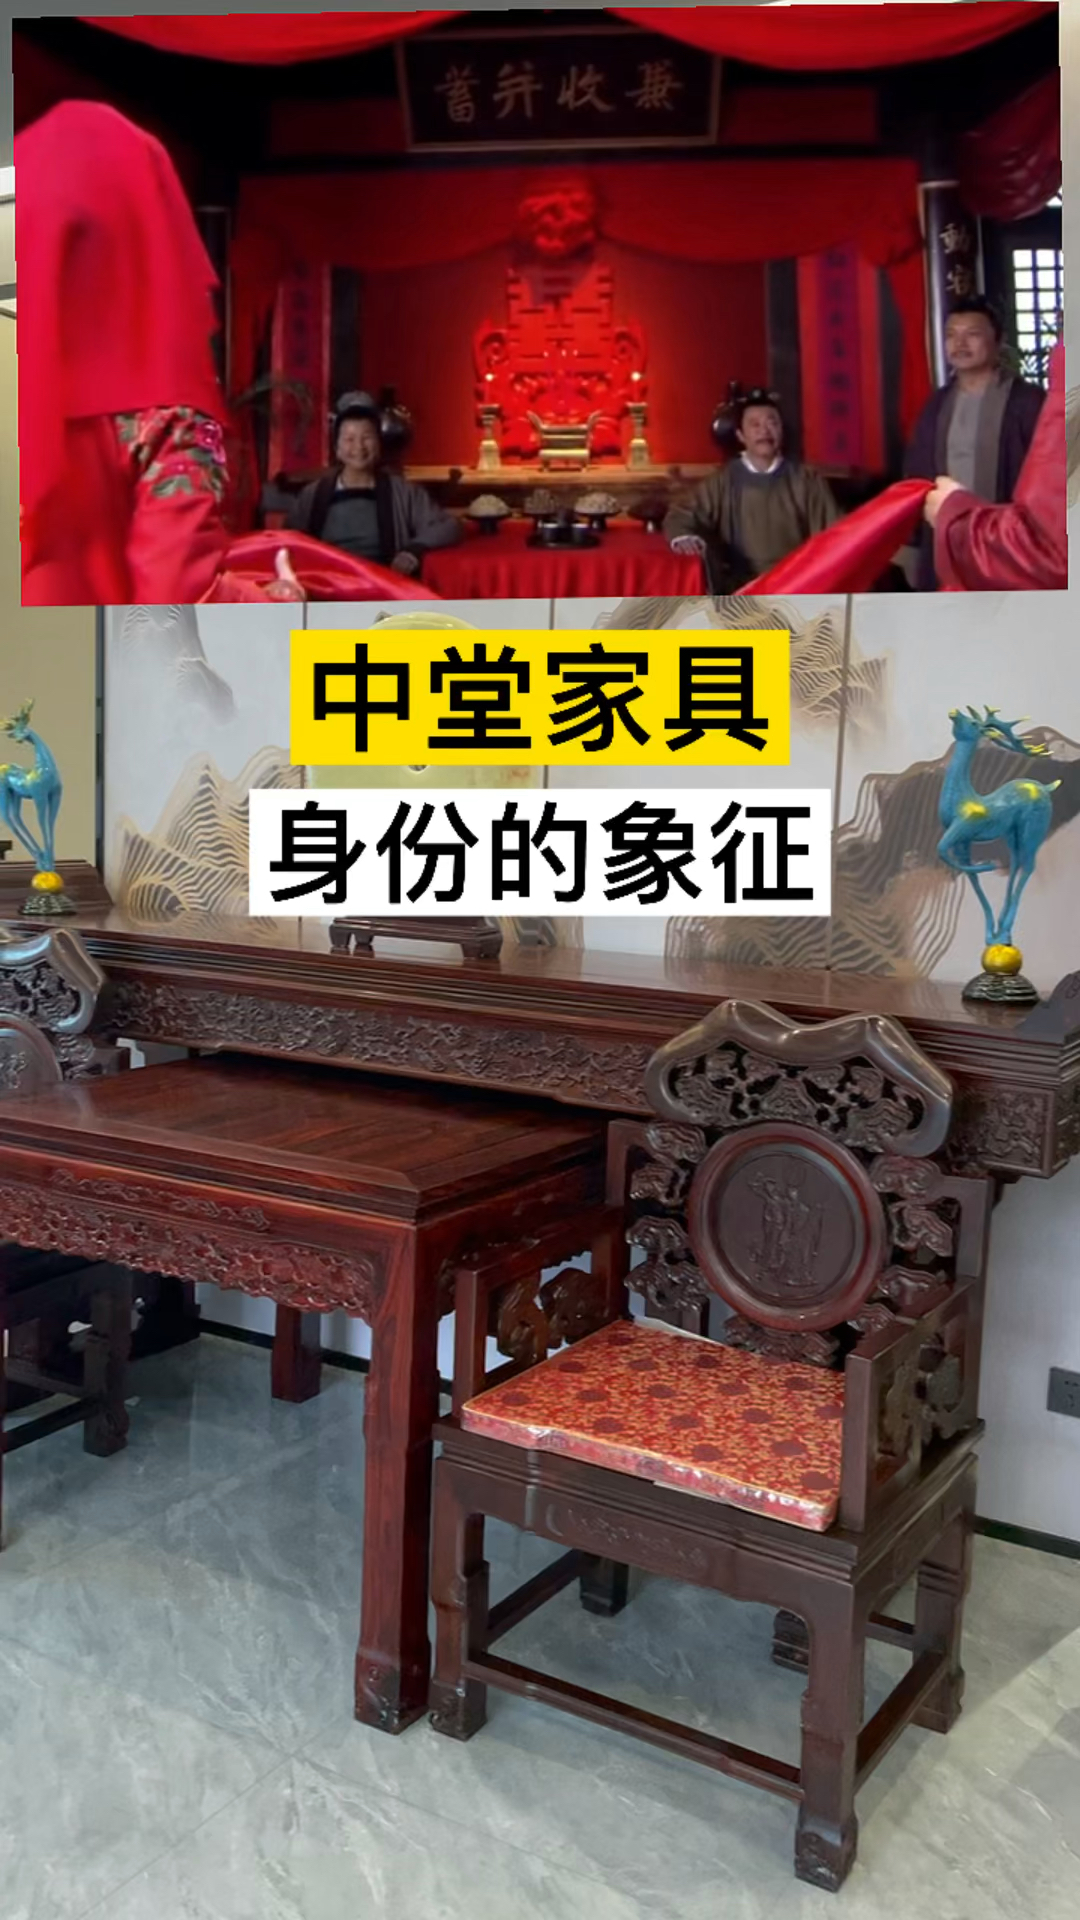 古典红木家具中堂家具中国人的面子身份与尊严的象征